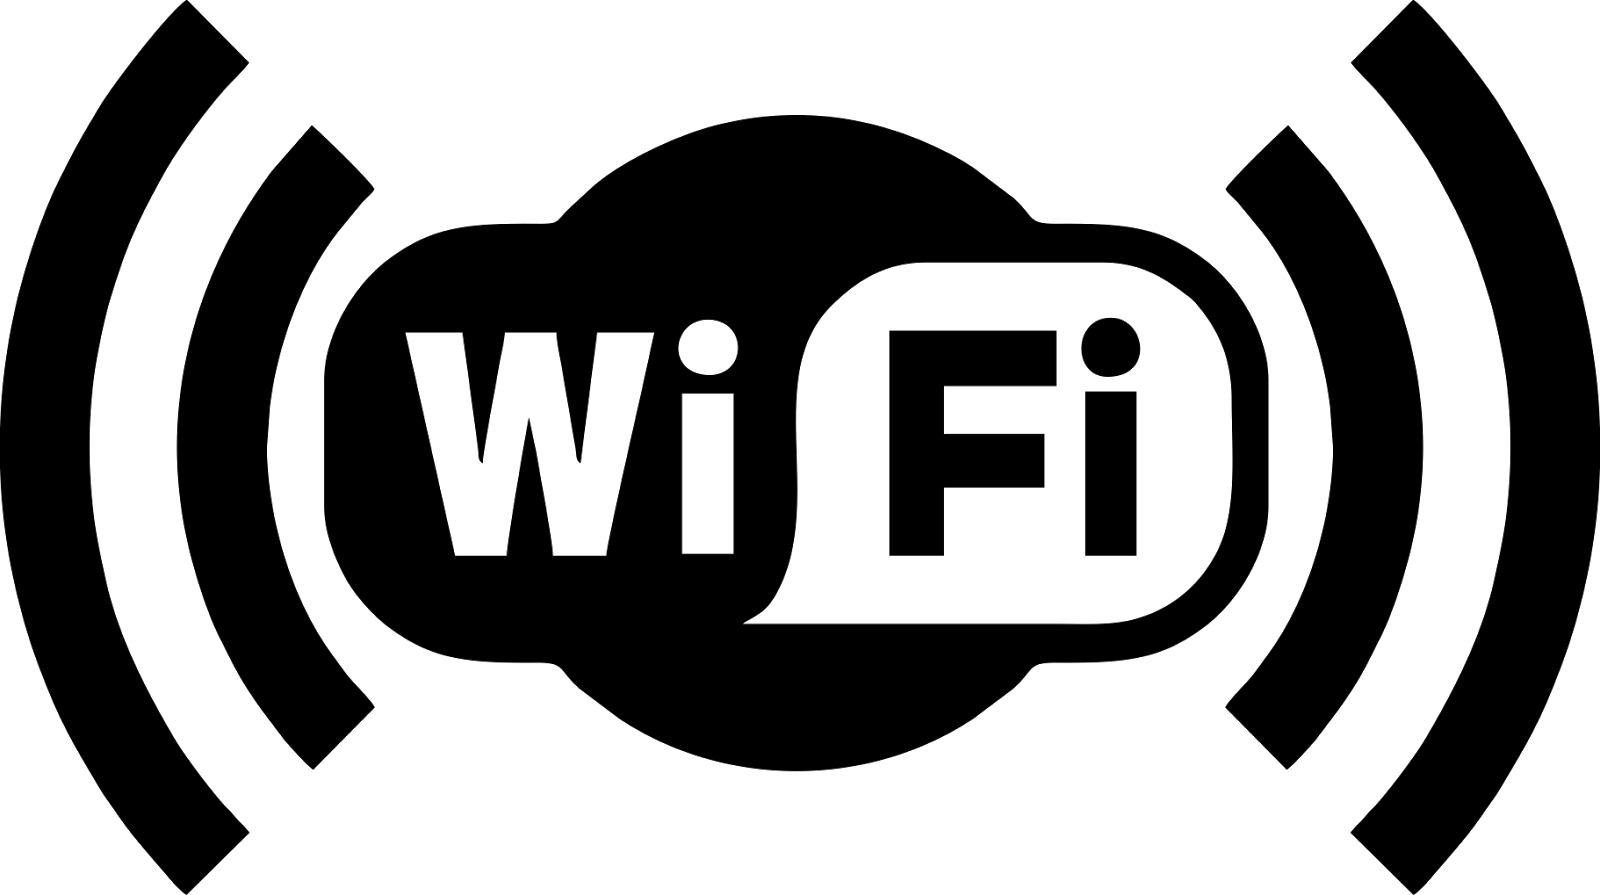 BLACK WIFI logo PNG image image